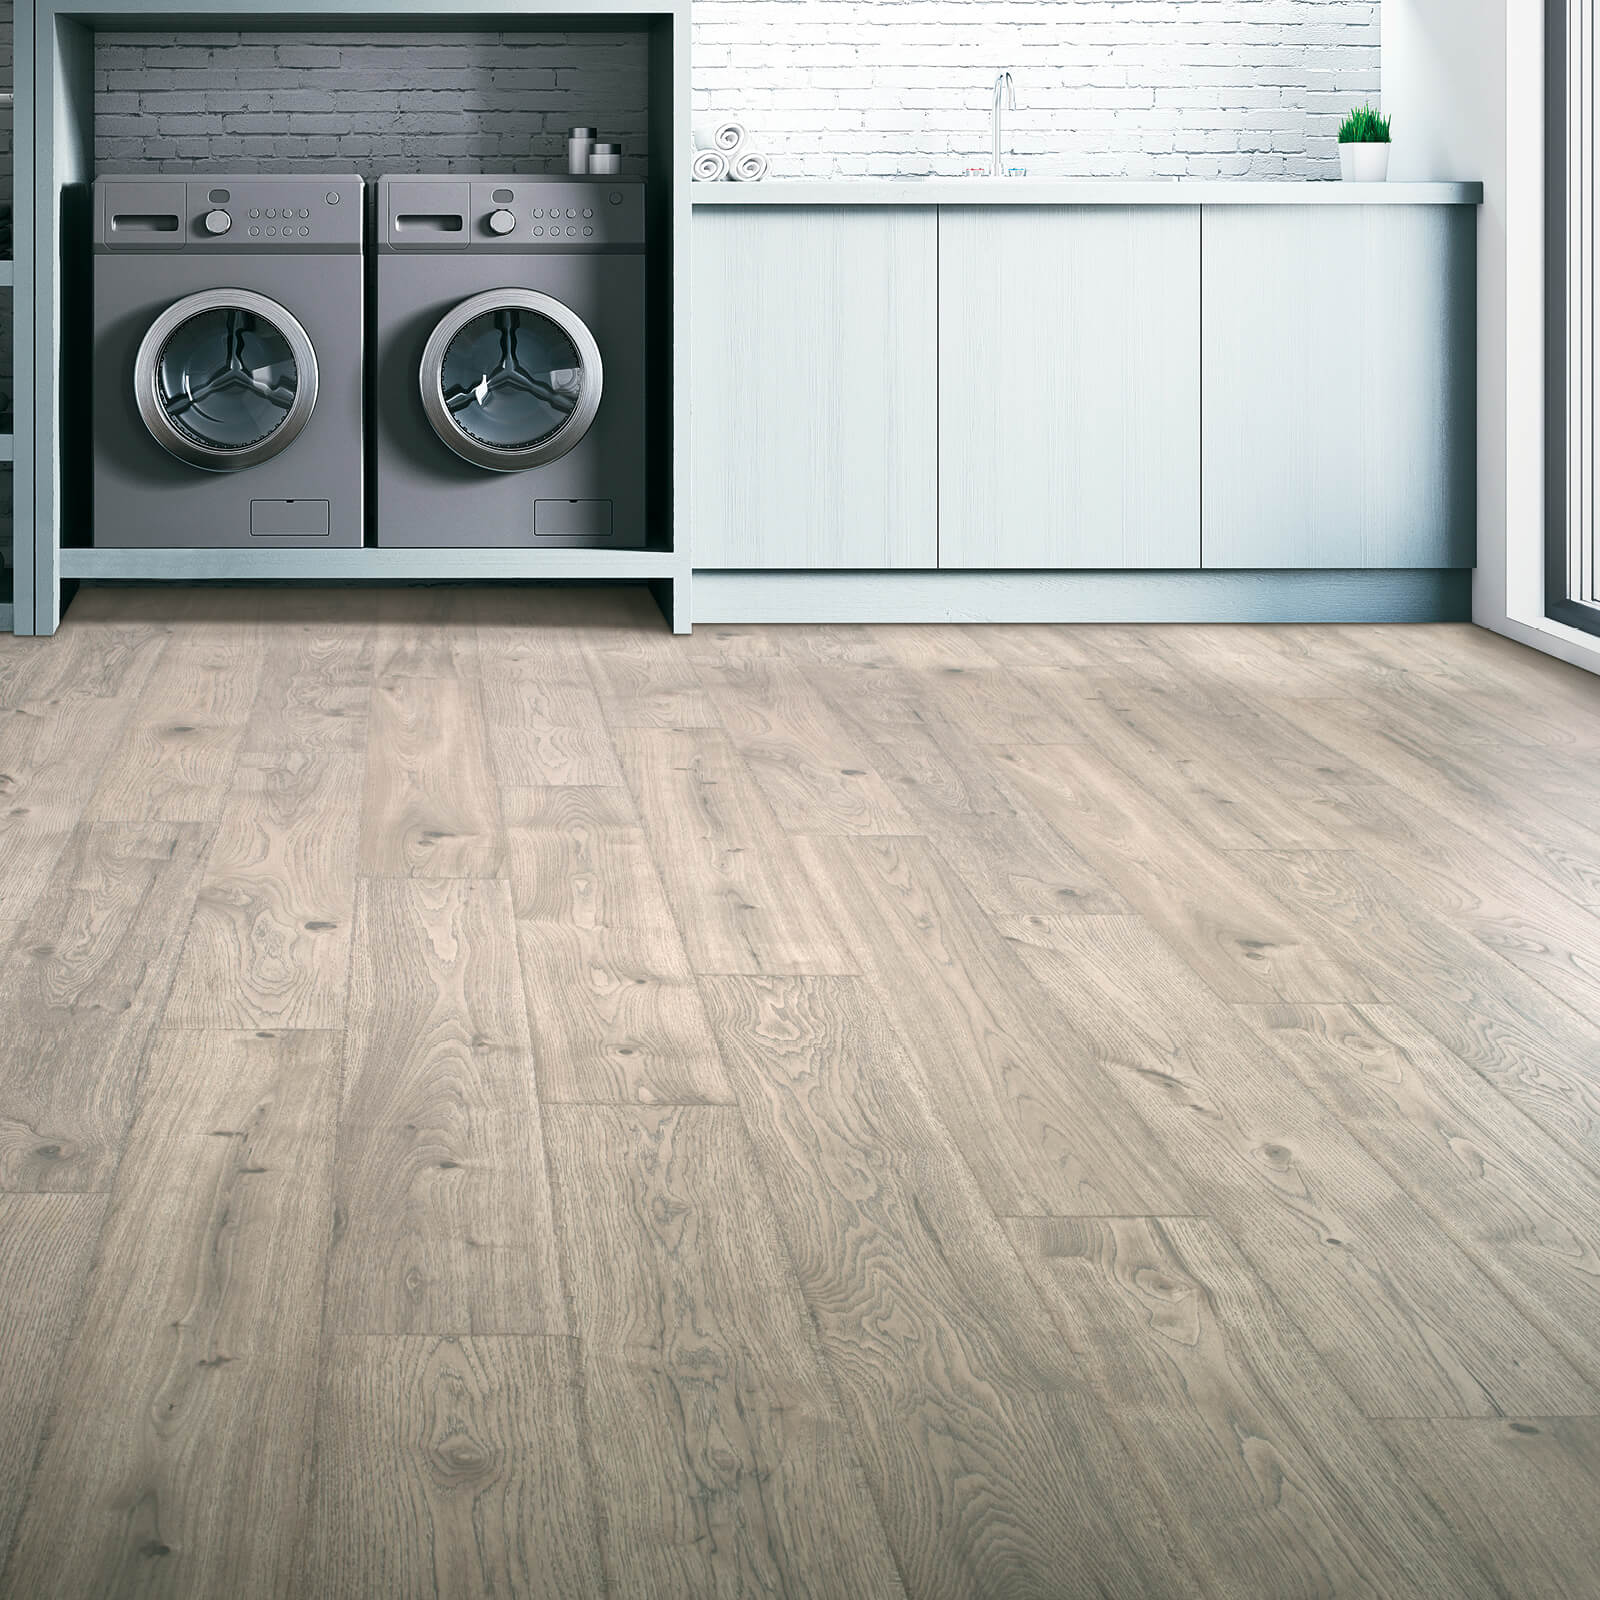 Laundry room Laminate flooring | CarpetsPlus COLORTILE